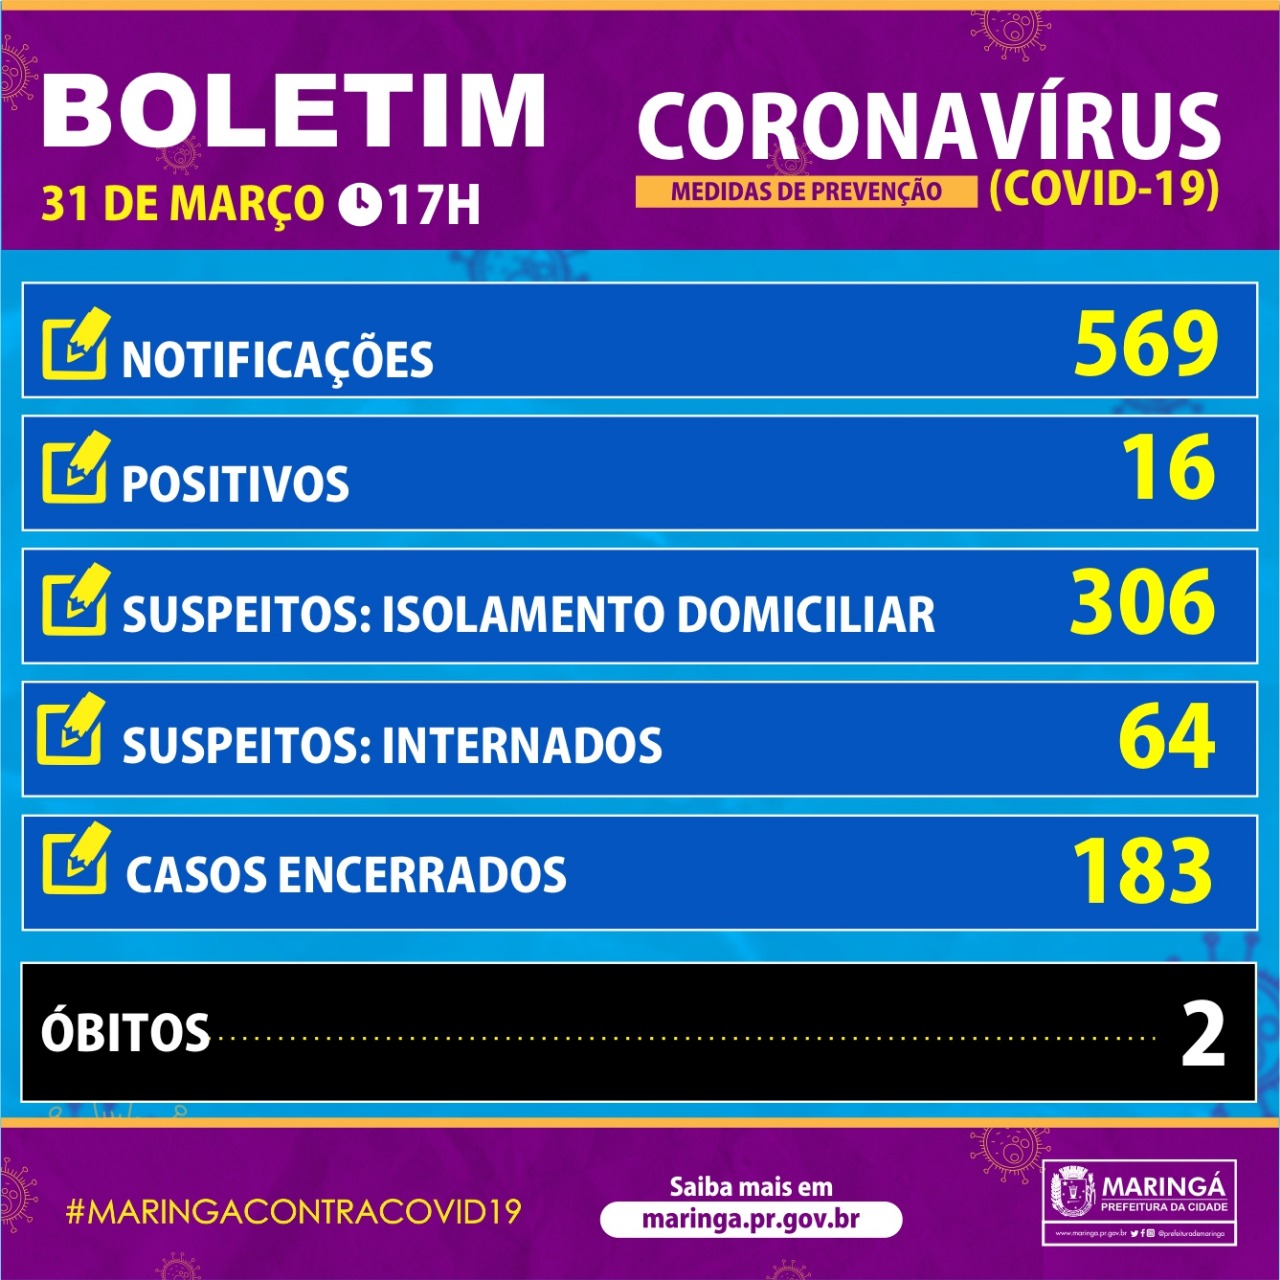 Boletim do coronavírus em Maringá de terça-feira, 31